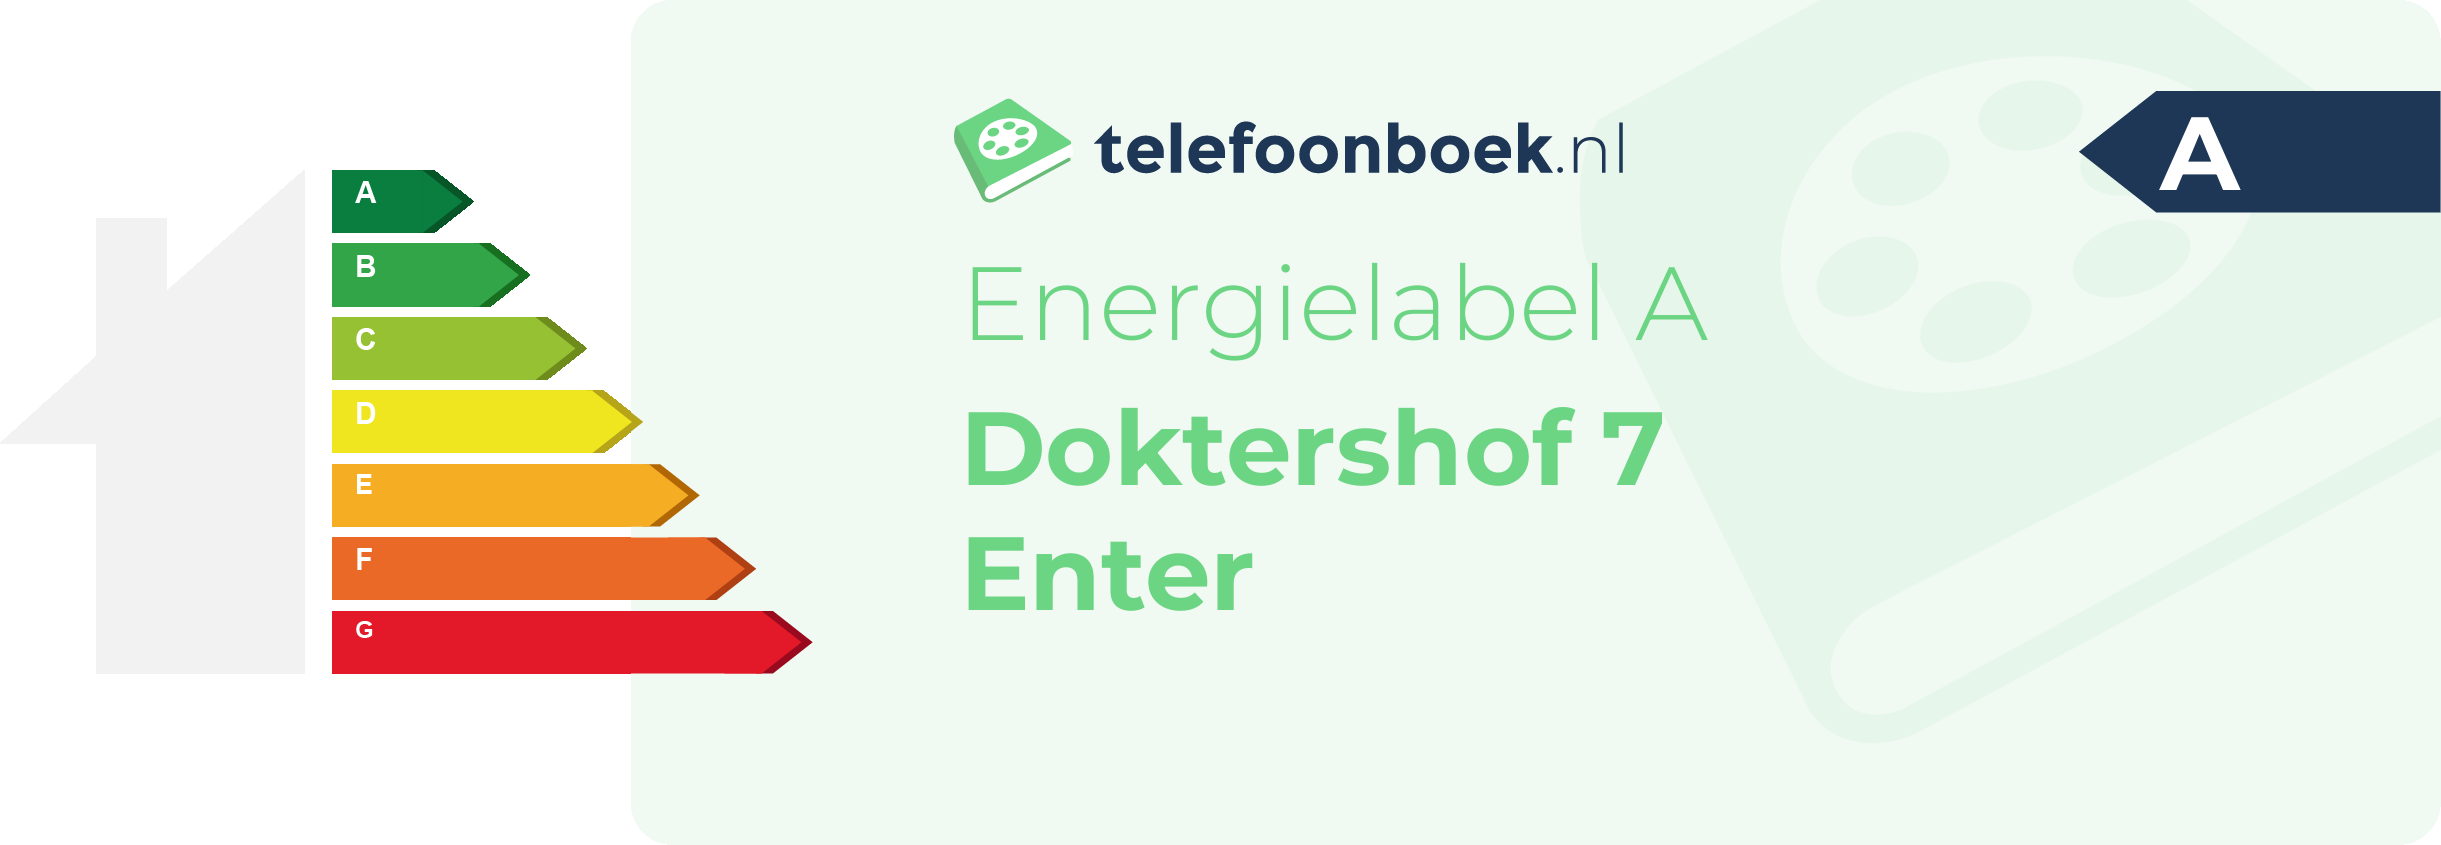 Energielabel Doktershof 7 Enter